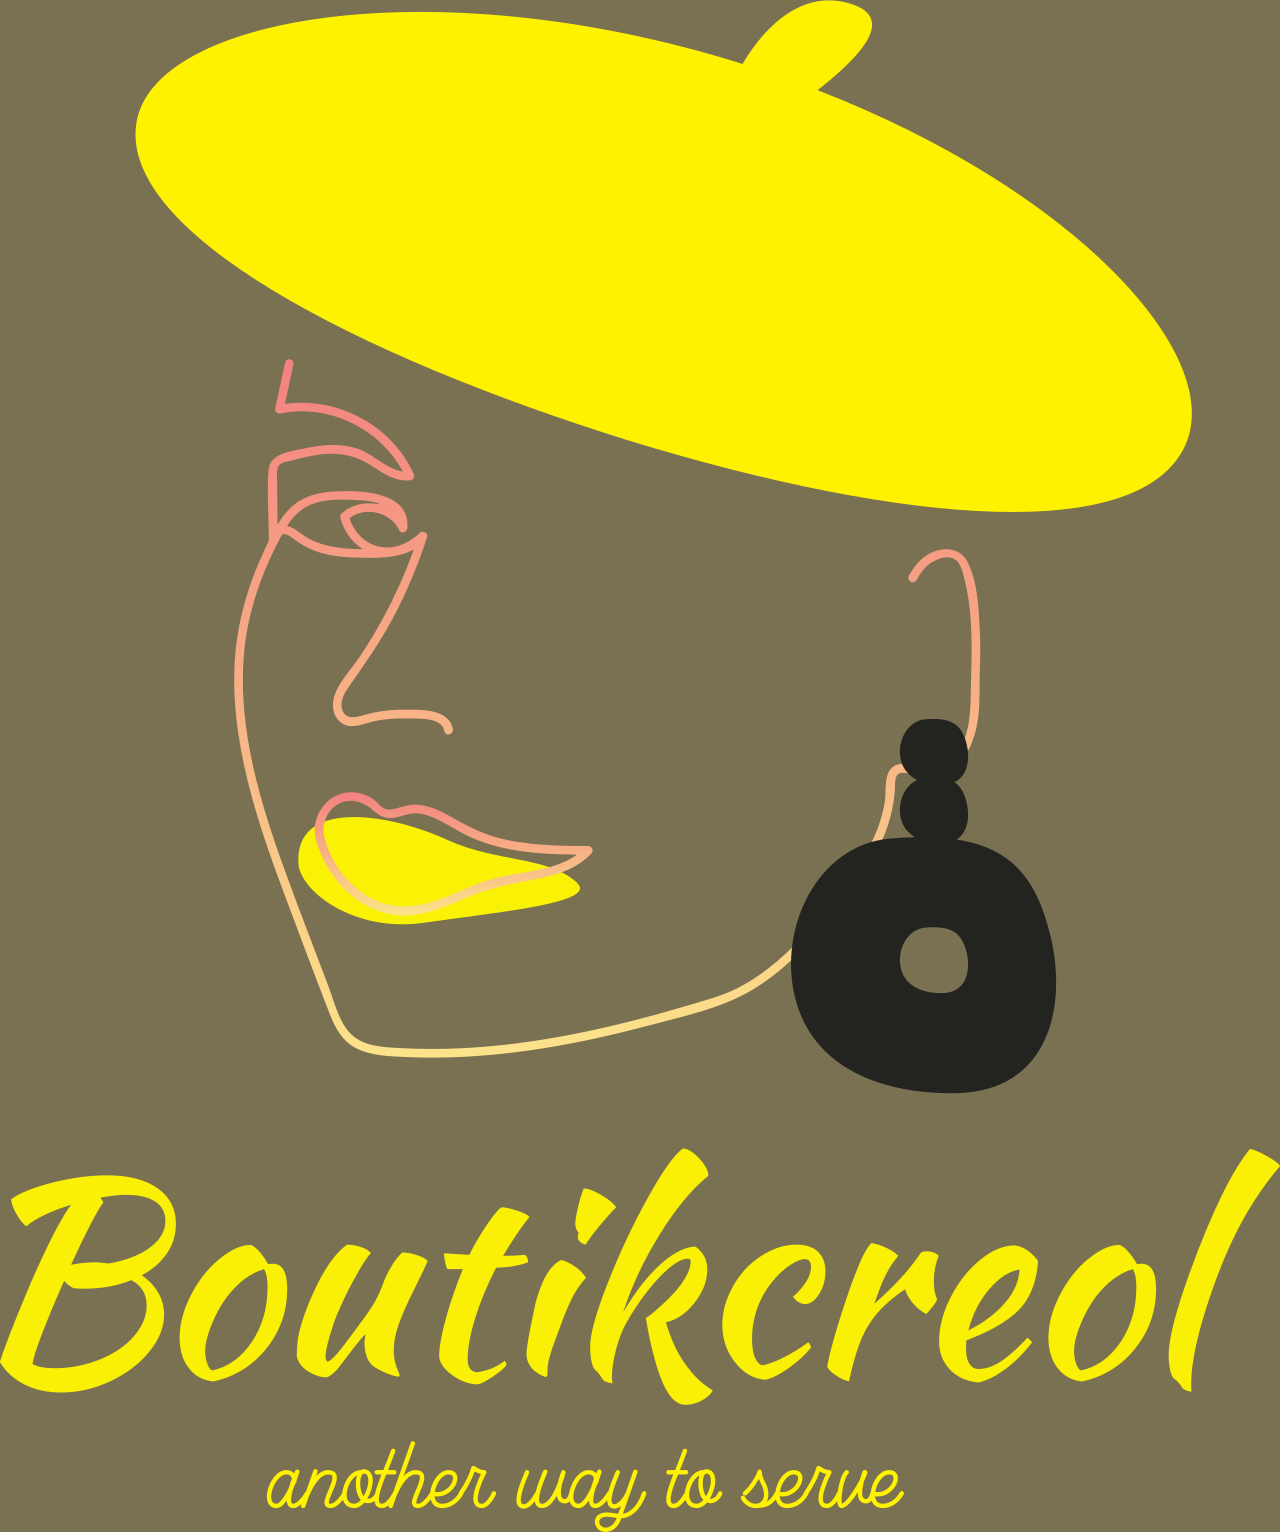 Boutikcreol's logo